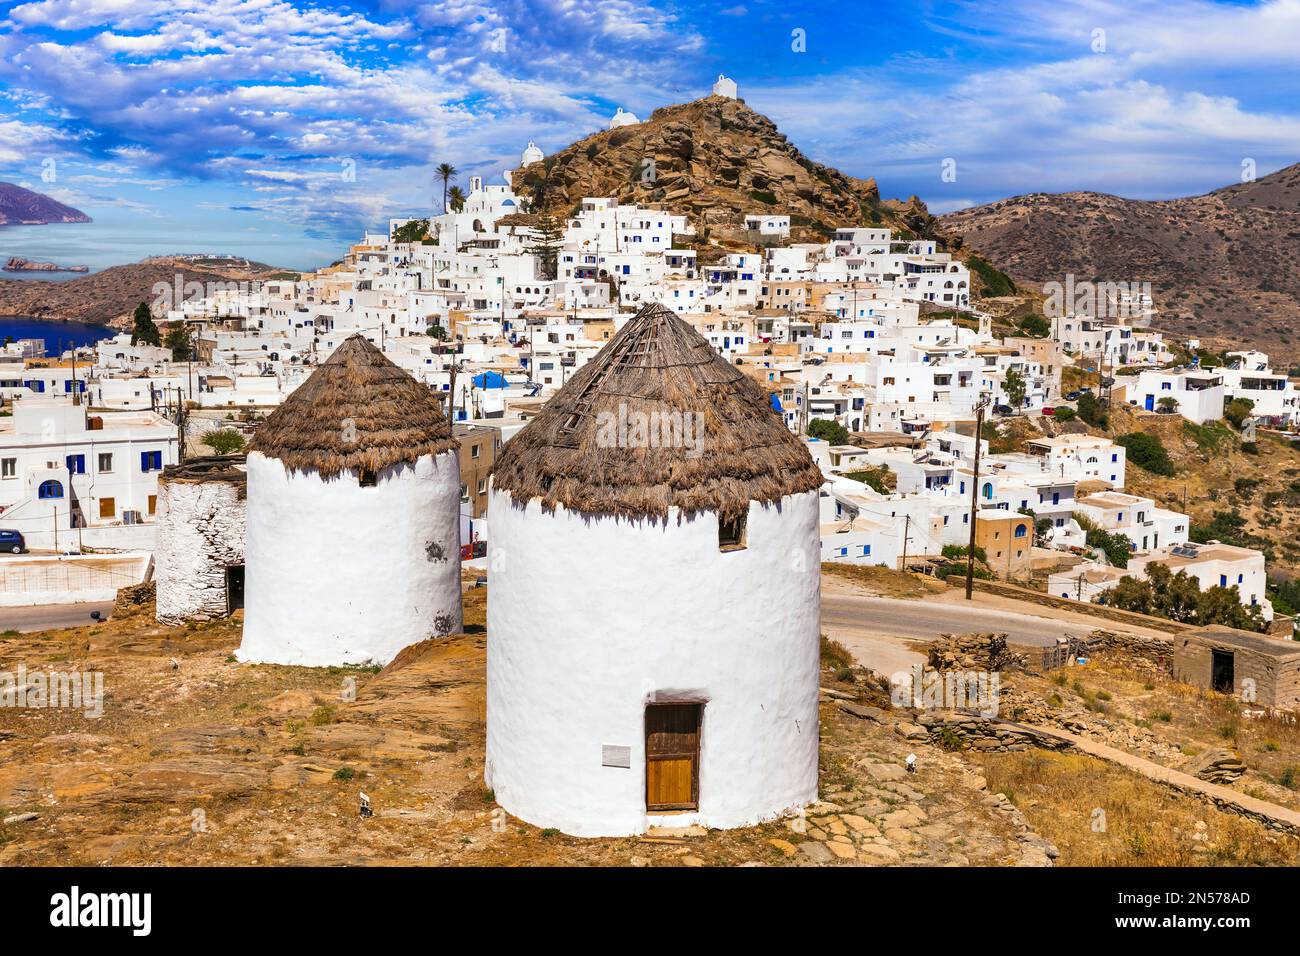 Griechenland Reisen, Kykladen. Malerische Insel iOS, Blick auf das malerische Dorf Chora und alte Windmühlen Stockfoto